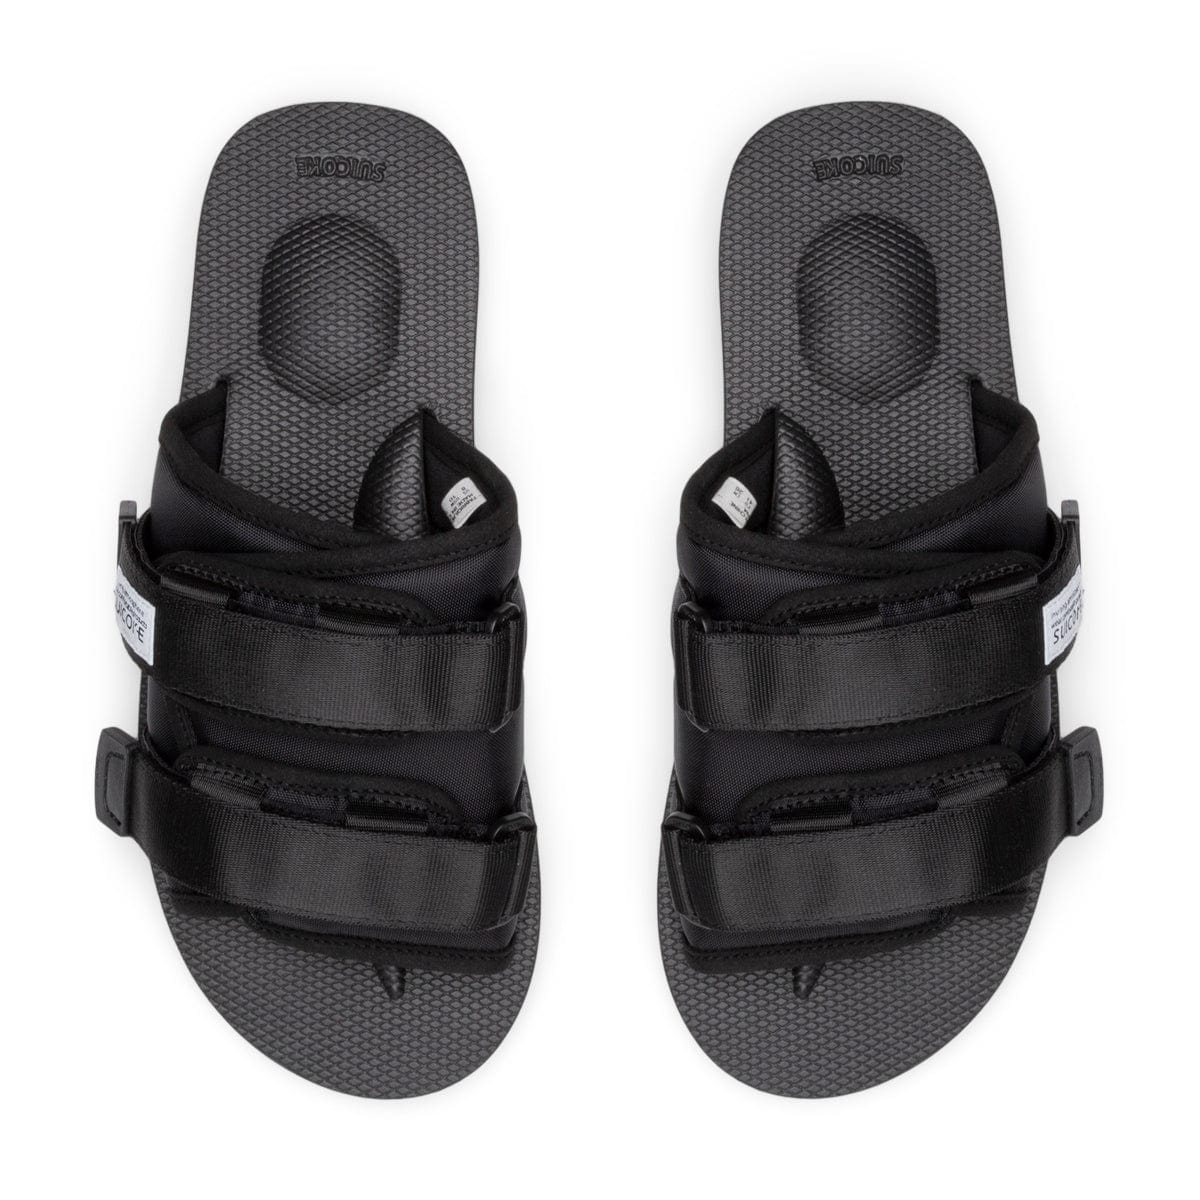 Suicoke: Black MOTO-CAB Sandals